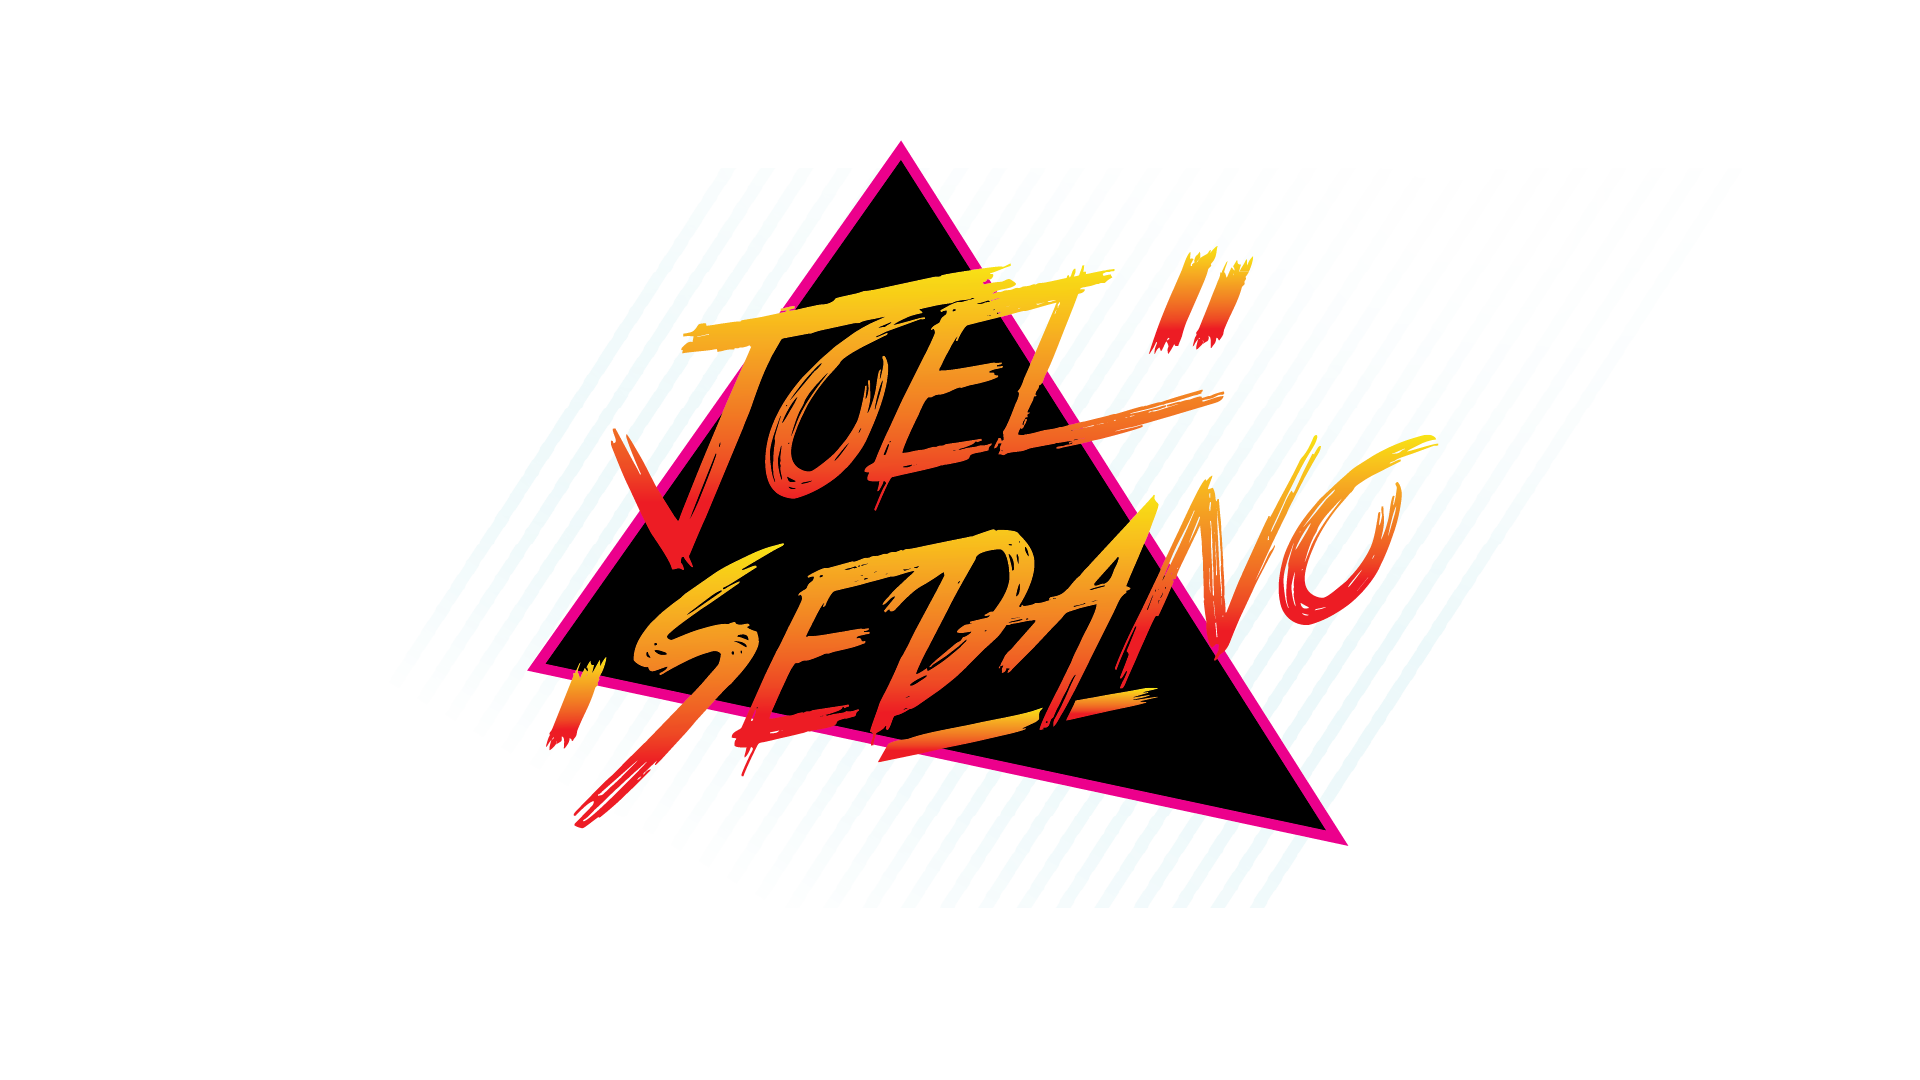 Joel Sedano Logotipo